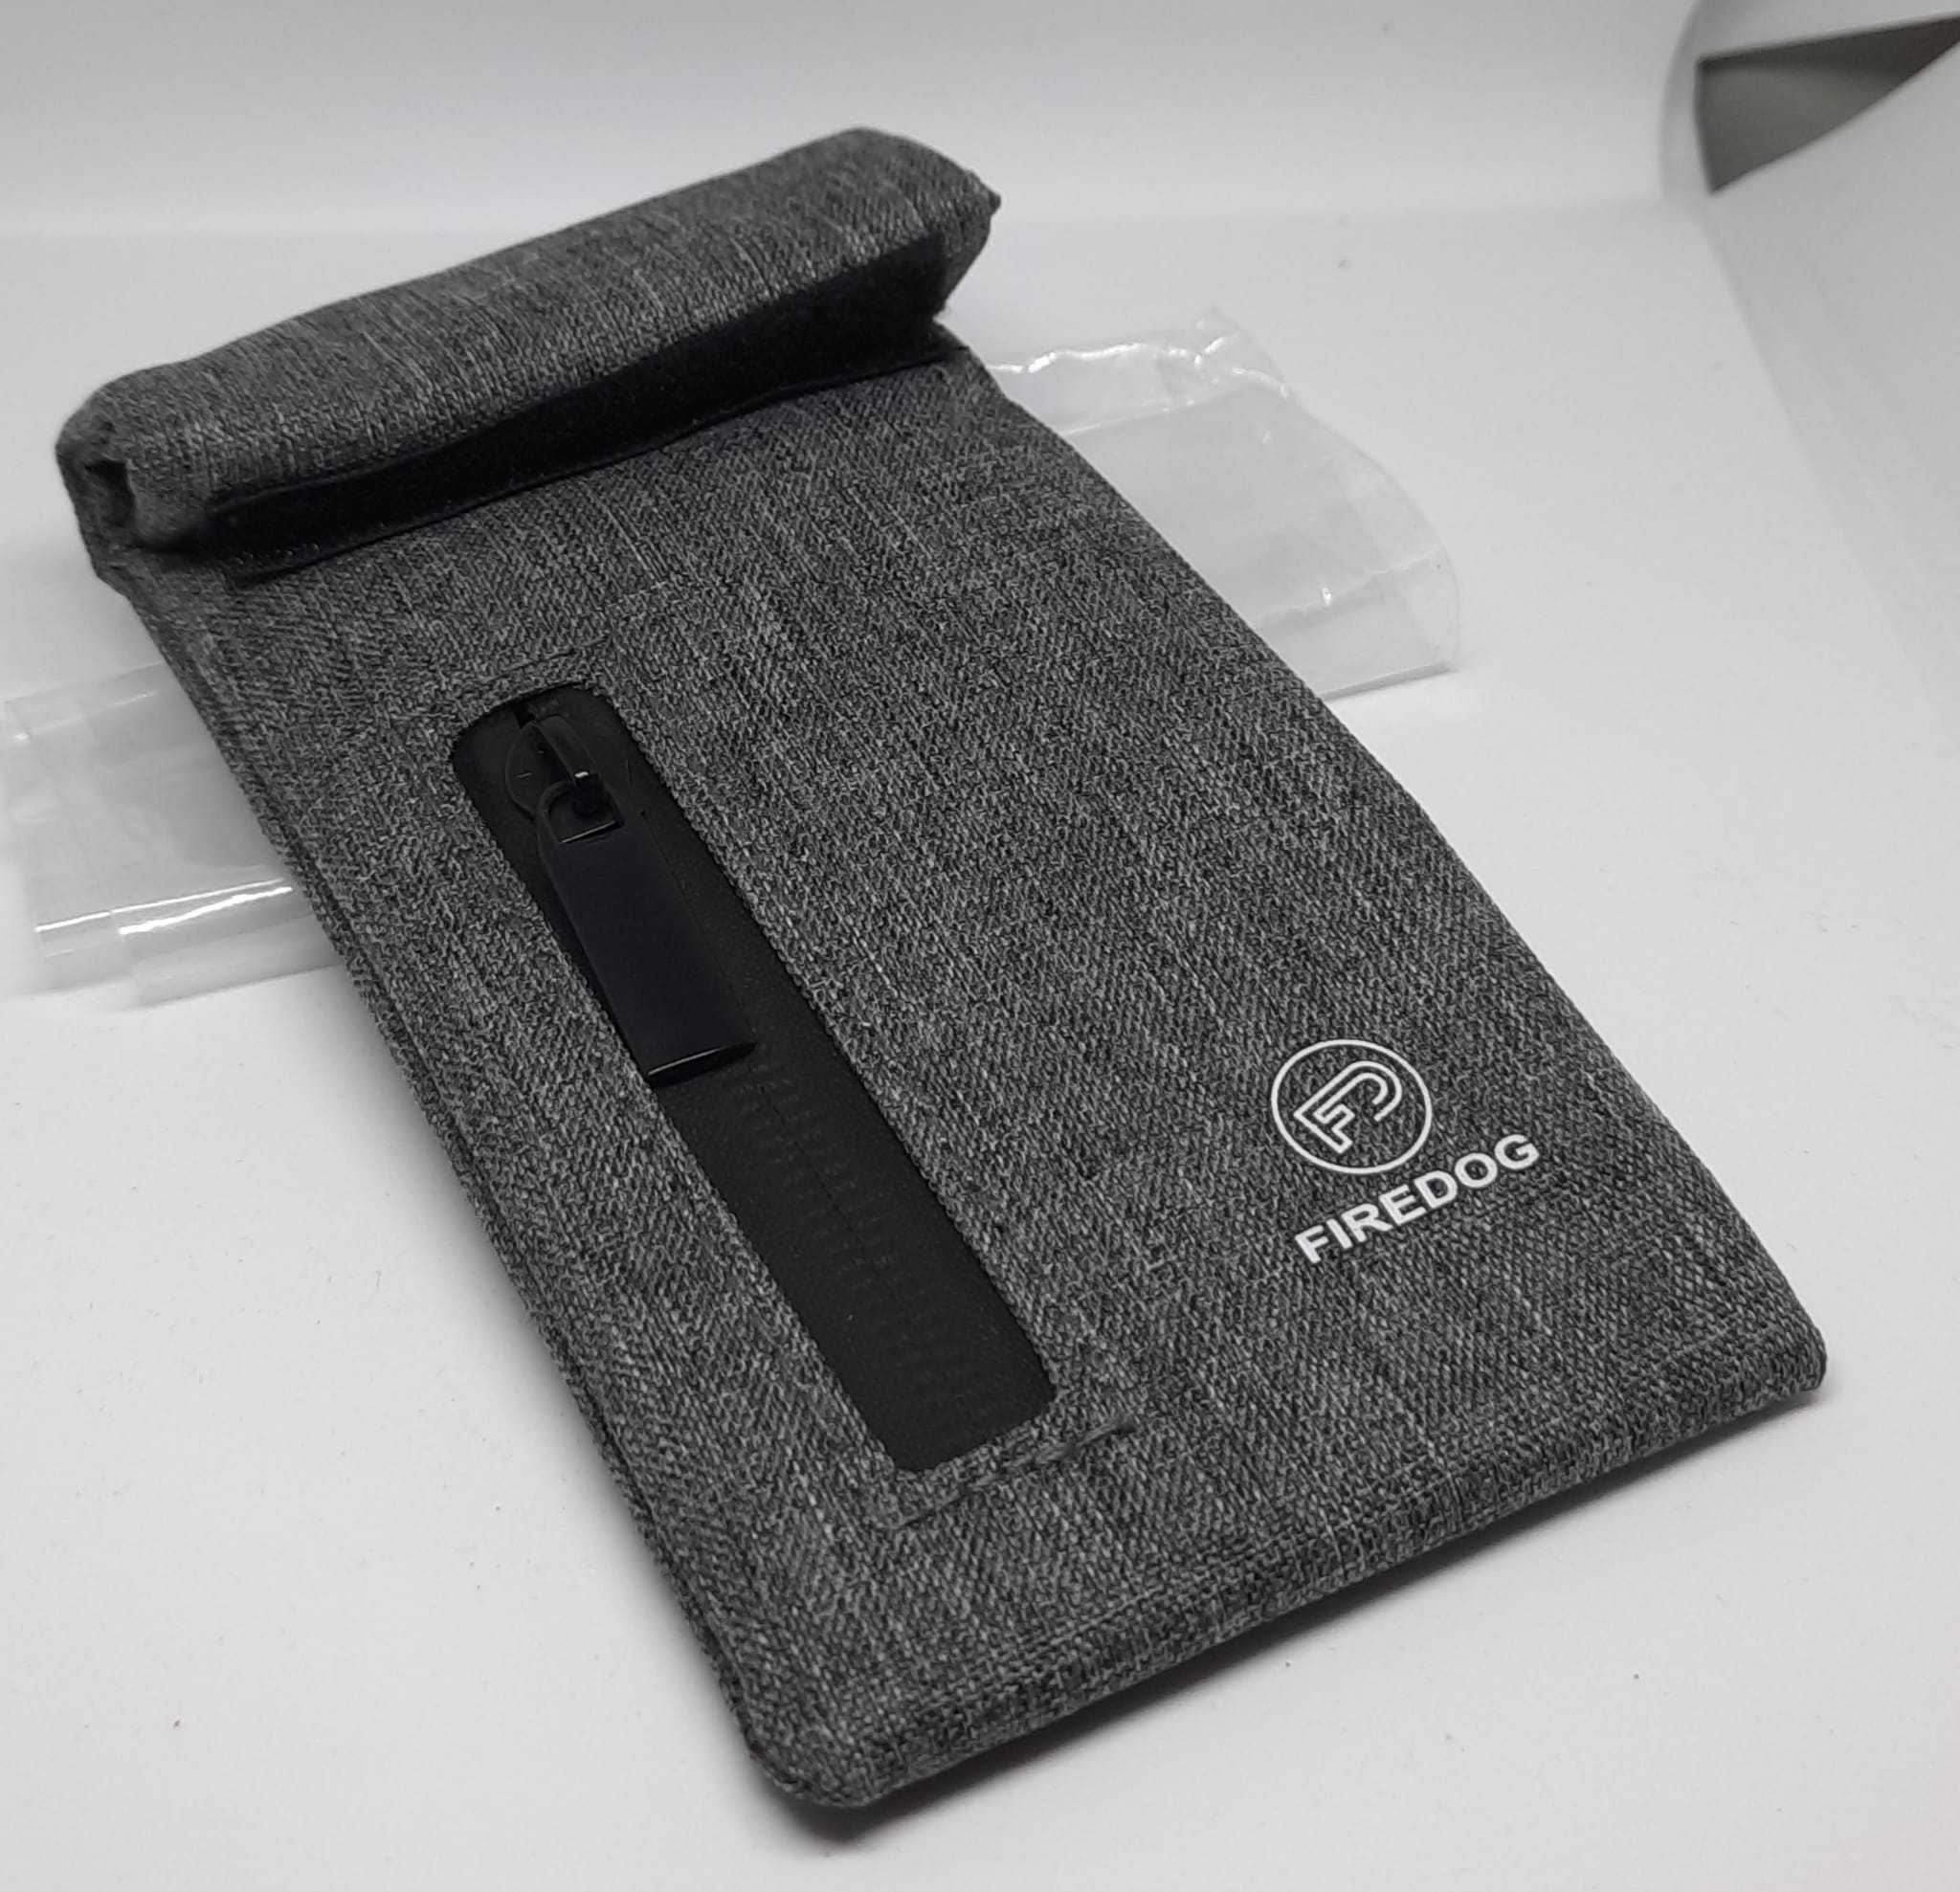 geruchsdicht 17,8 x 15,2 cm mit Carbon-Futter für Reisen Schwarz Firedog Geruchssichere Tasche geruchssicher 